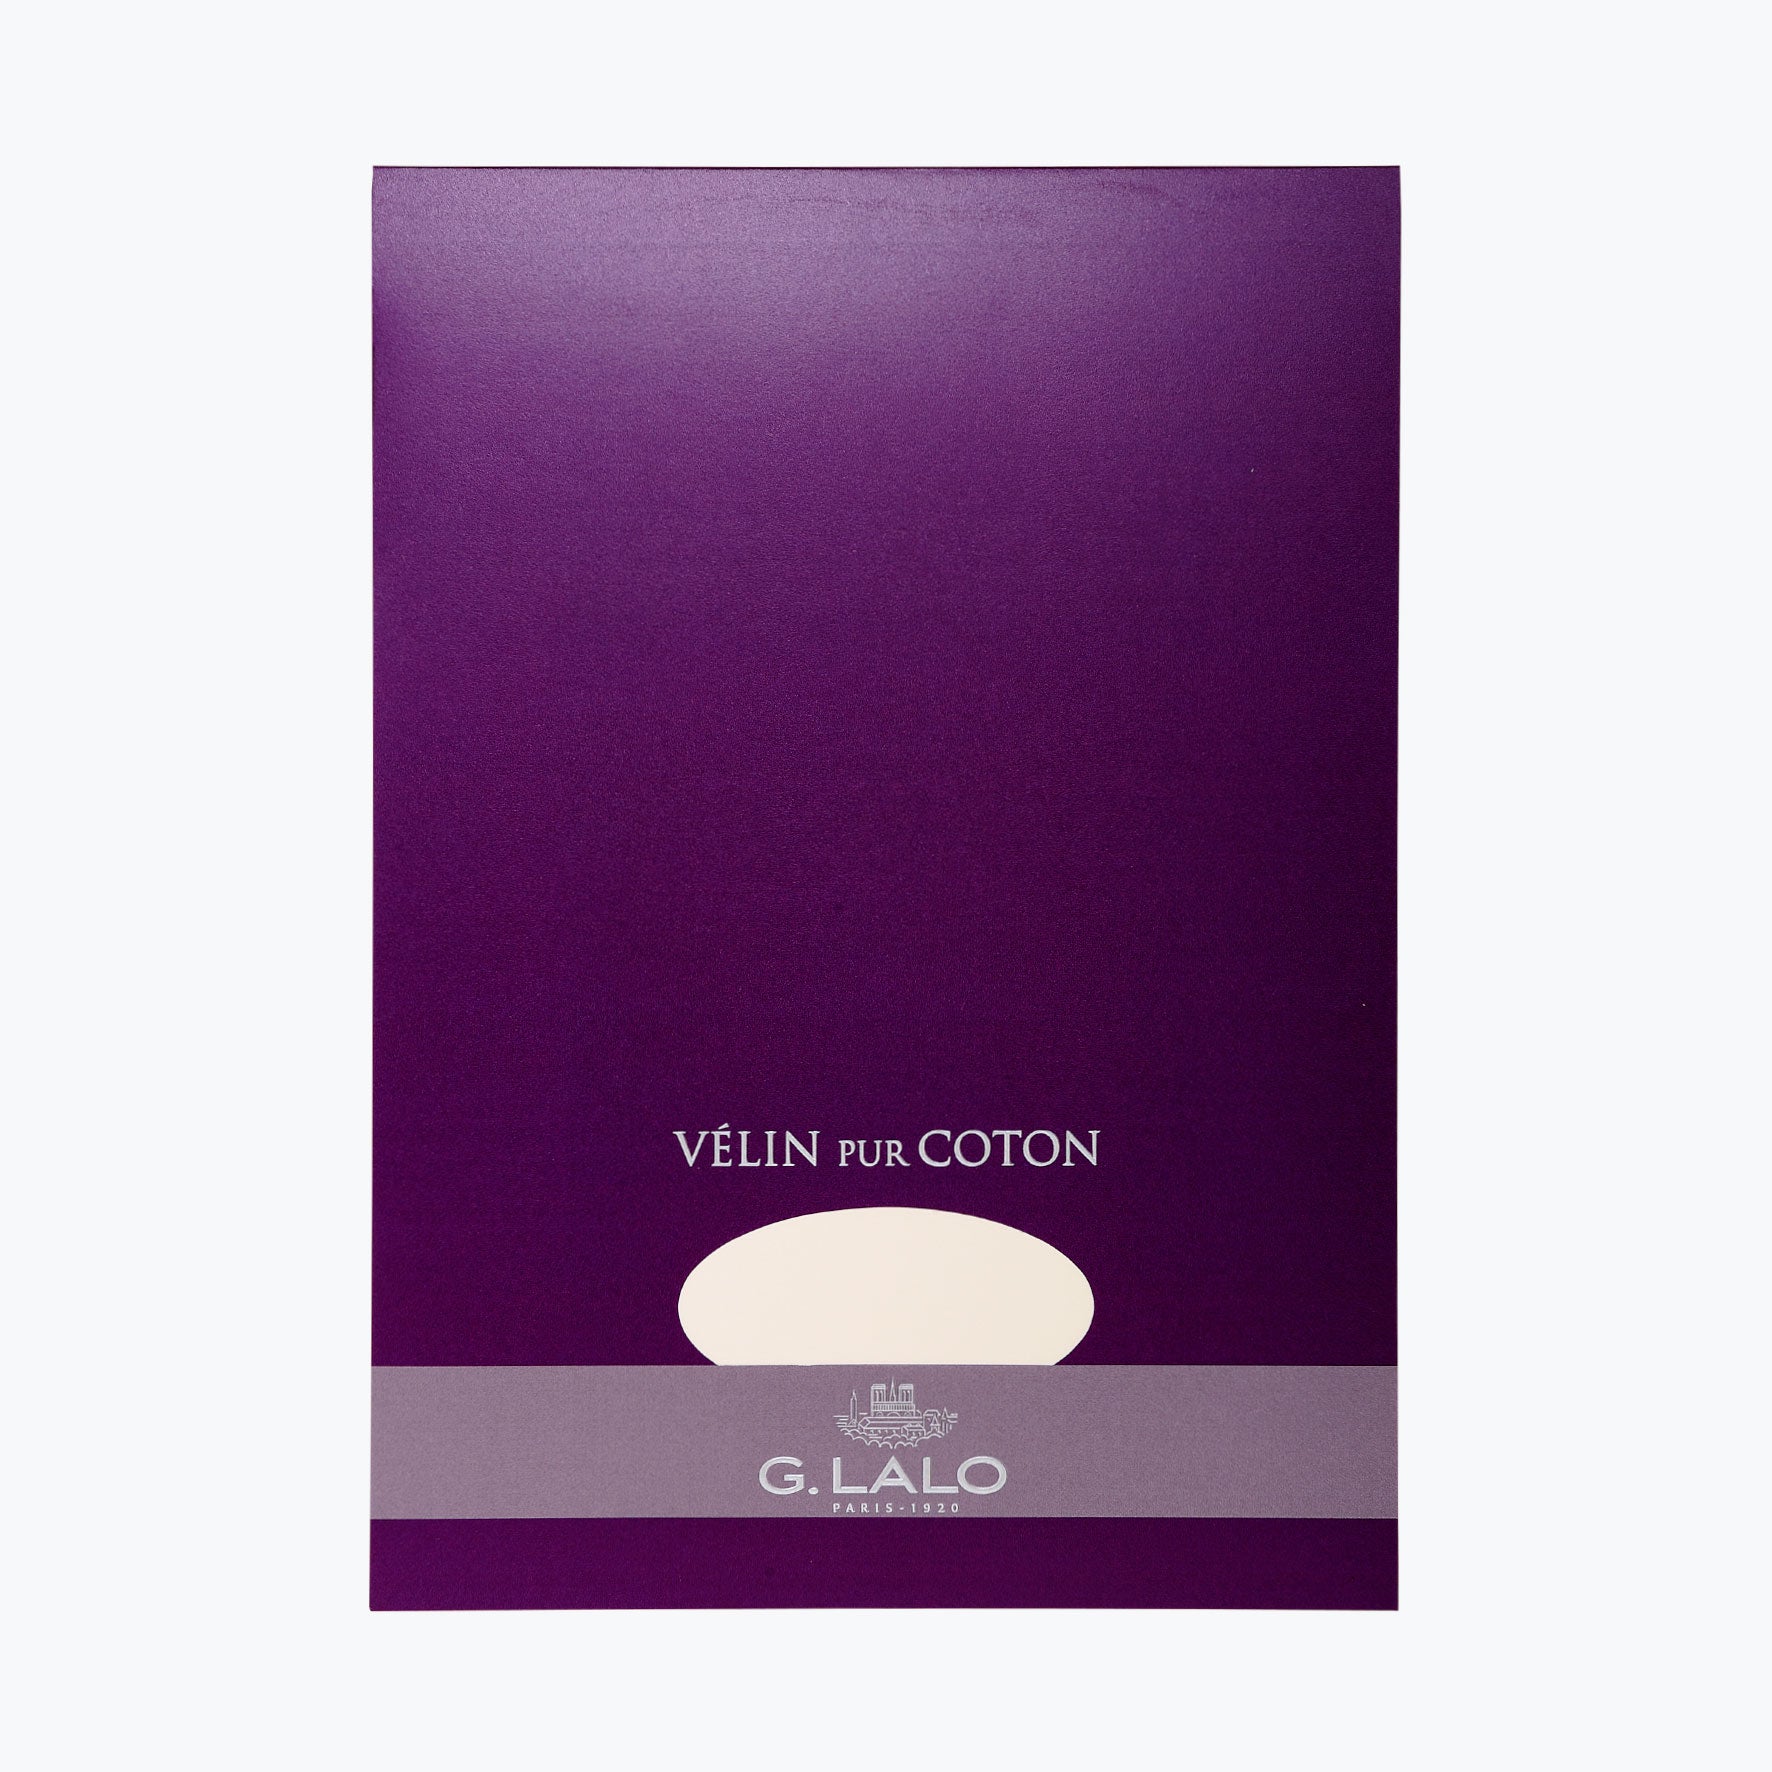 G. Lalo - Writing Pad - A4 - Cotton Cream (Vélin Pur Coton)